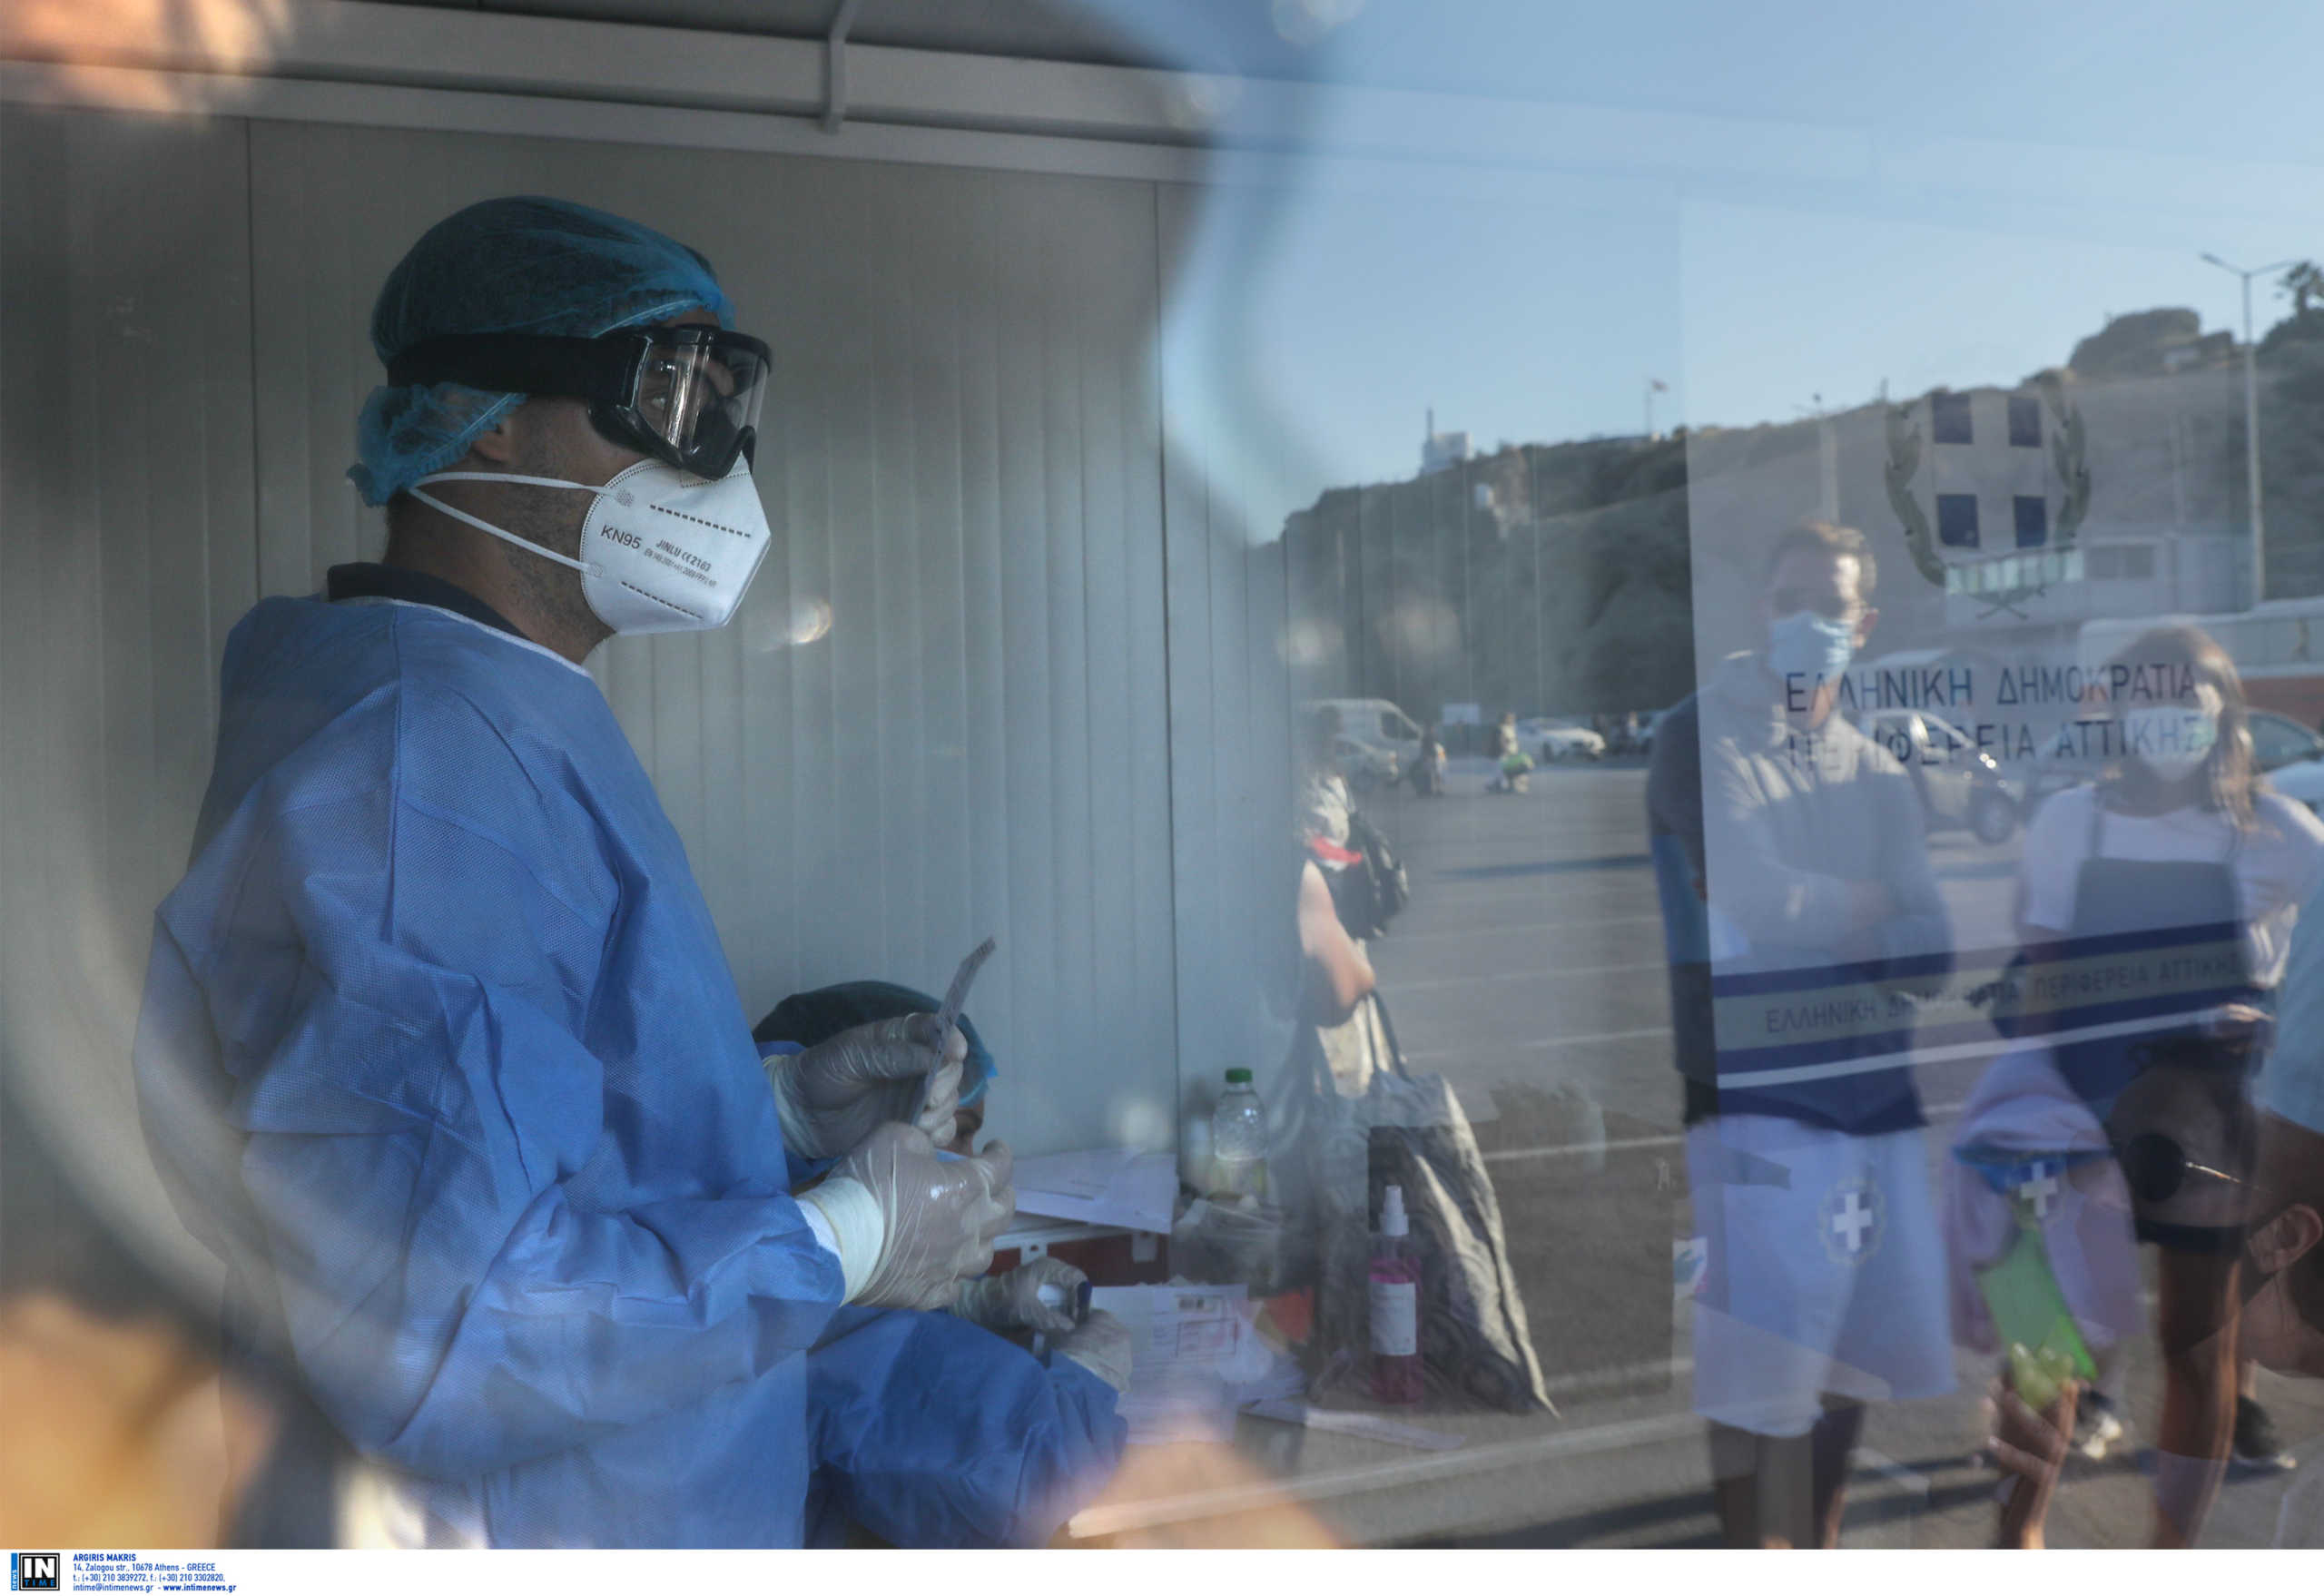 Κορονοϊός – Τρίκαλα: Σε καραντίνα 9 γιατροί και νοσηλευτές του νοσοκομείου